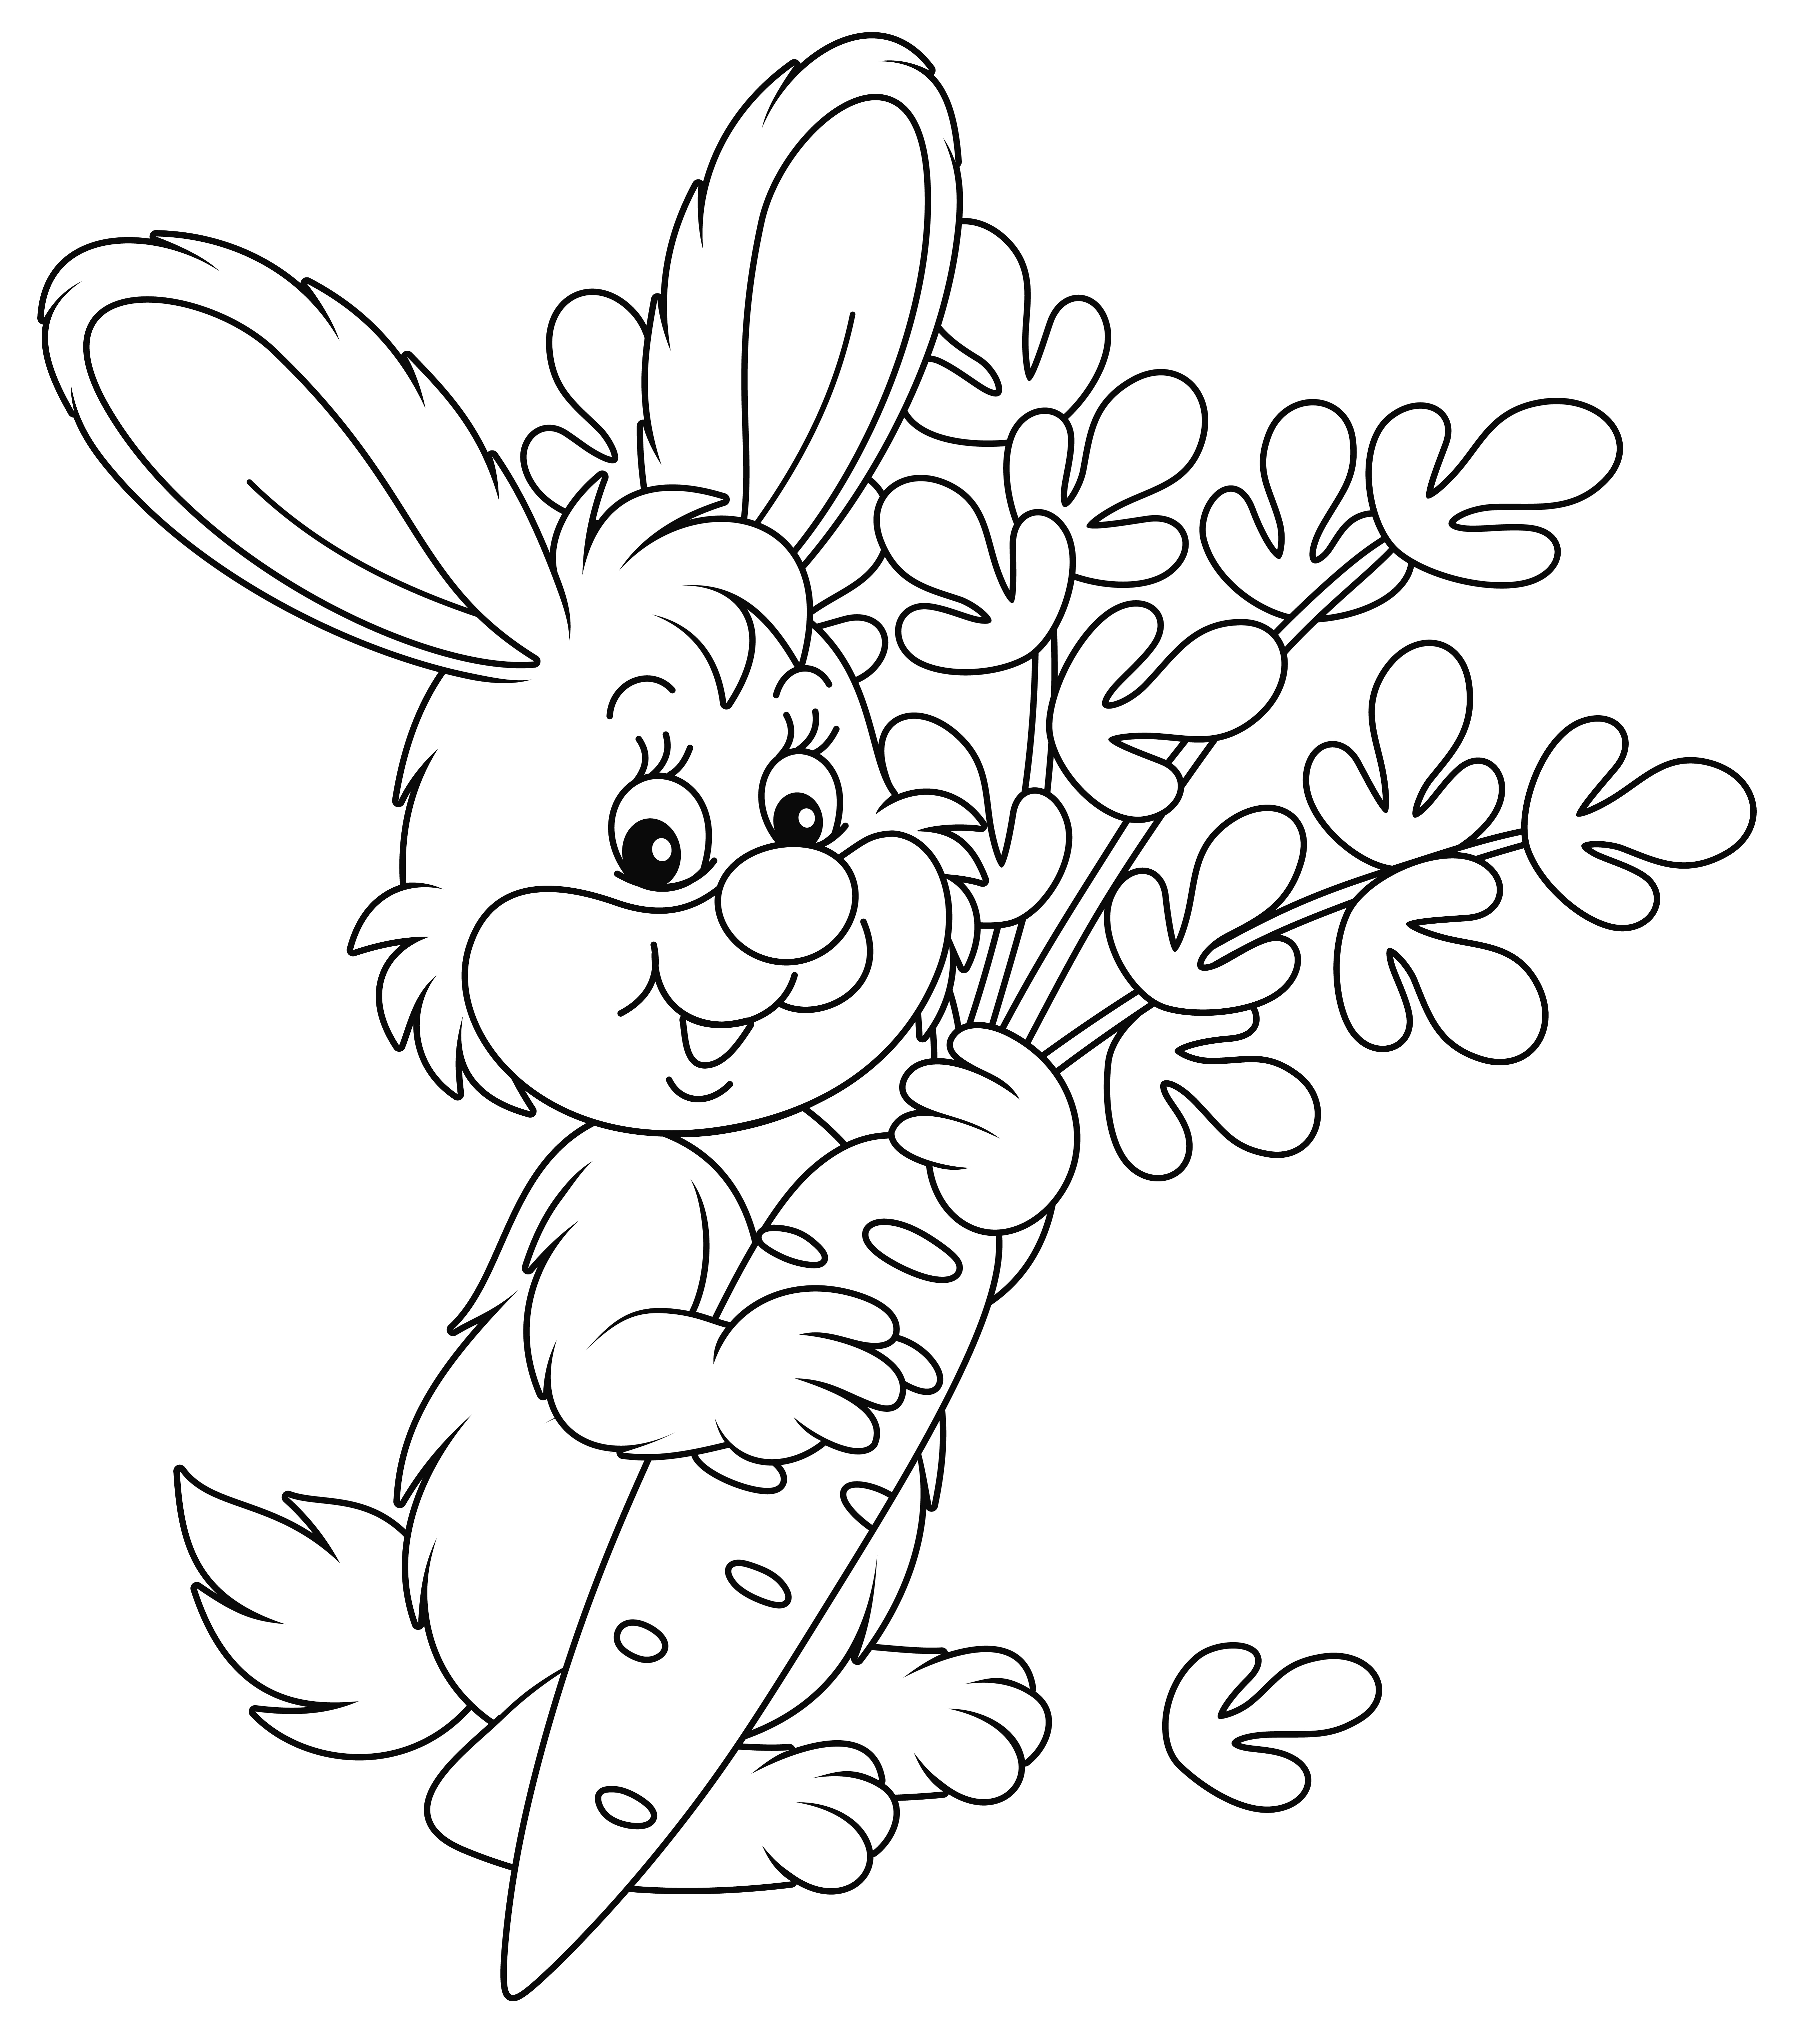 Раскраска счастливый маленький кролик со спелой морковью формата А4 в высоком качестве